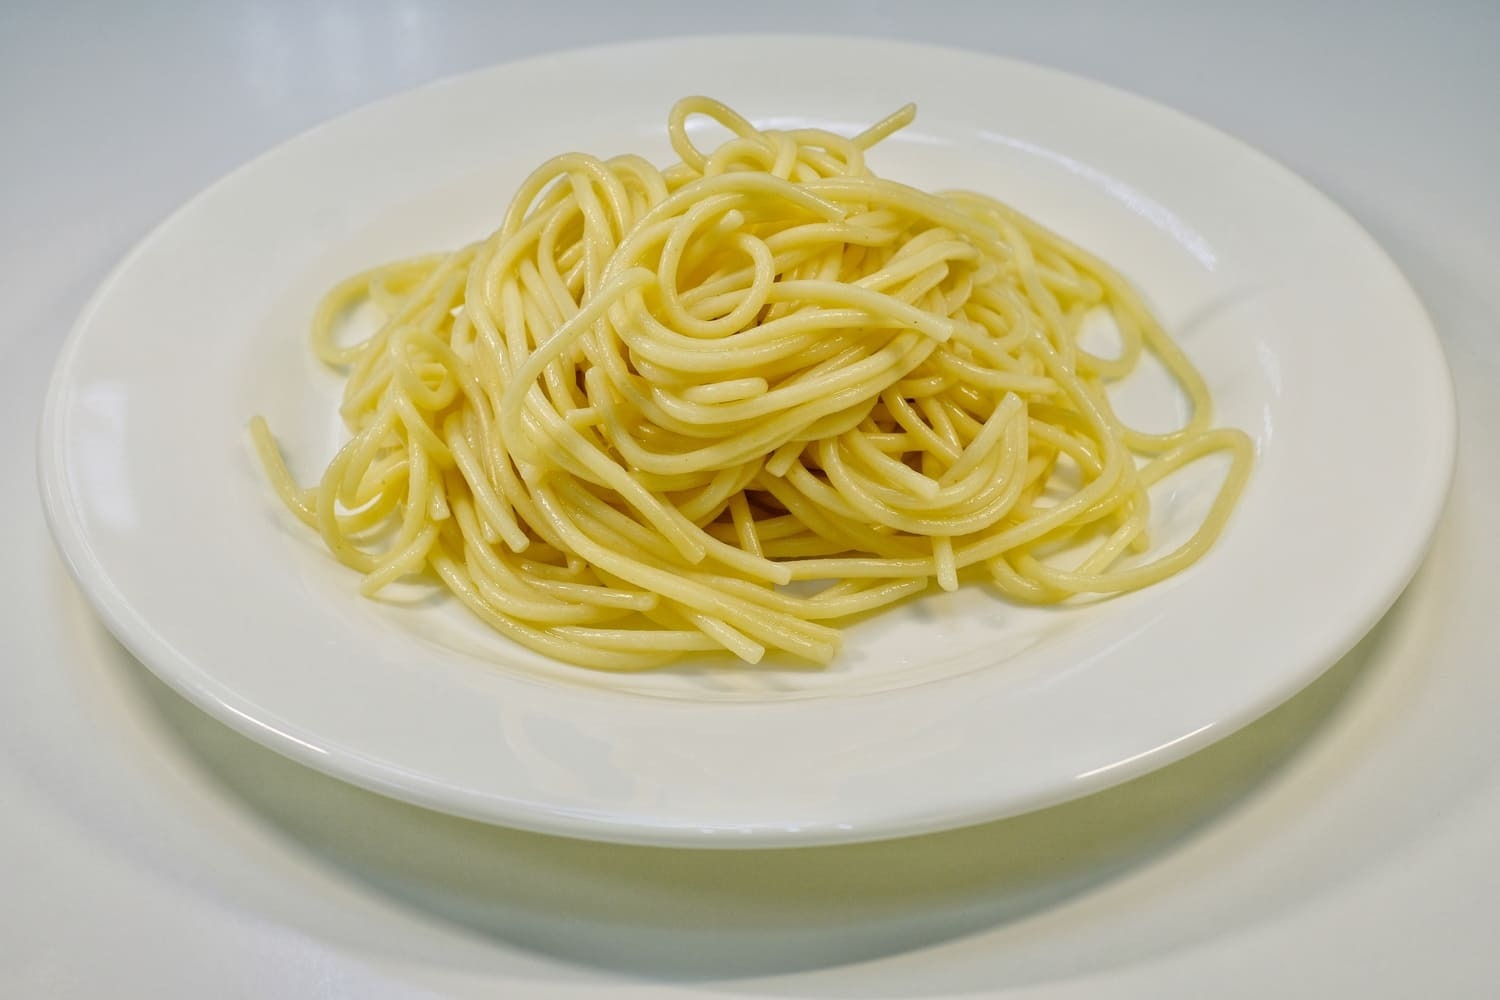 Порция спагетти грамм. 100 Г спагетти. Астория спагетти. 100 Грамм спагетти. 100 Грамм макарон спагетти.